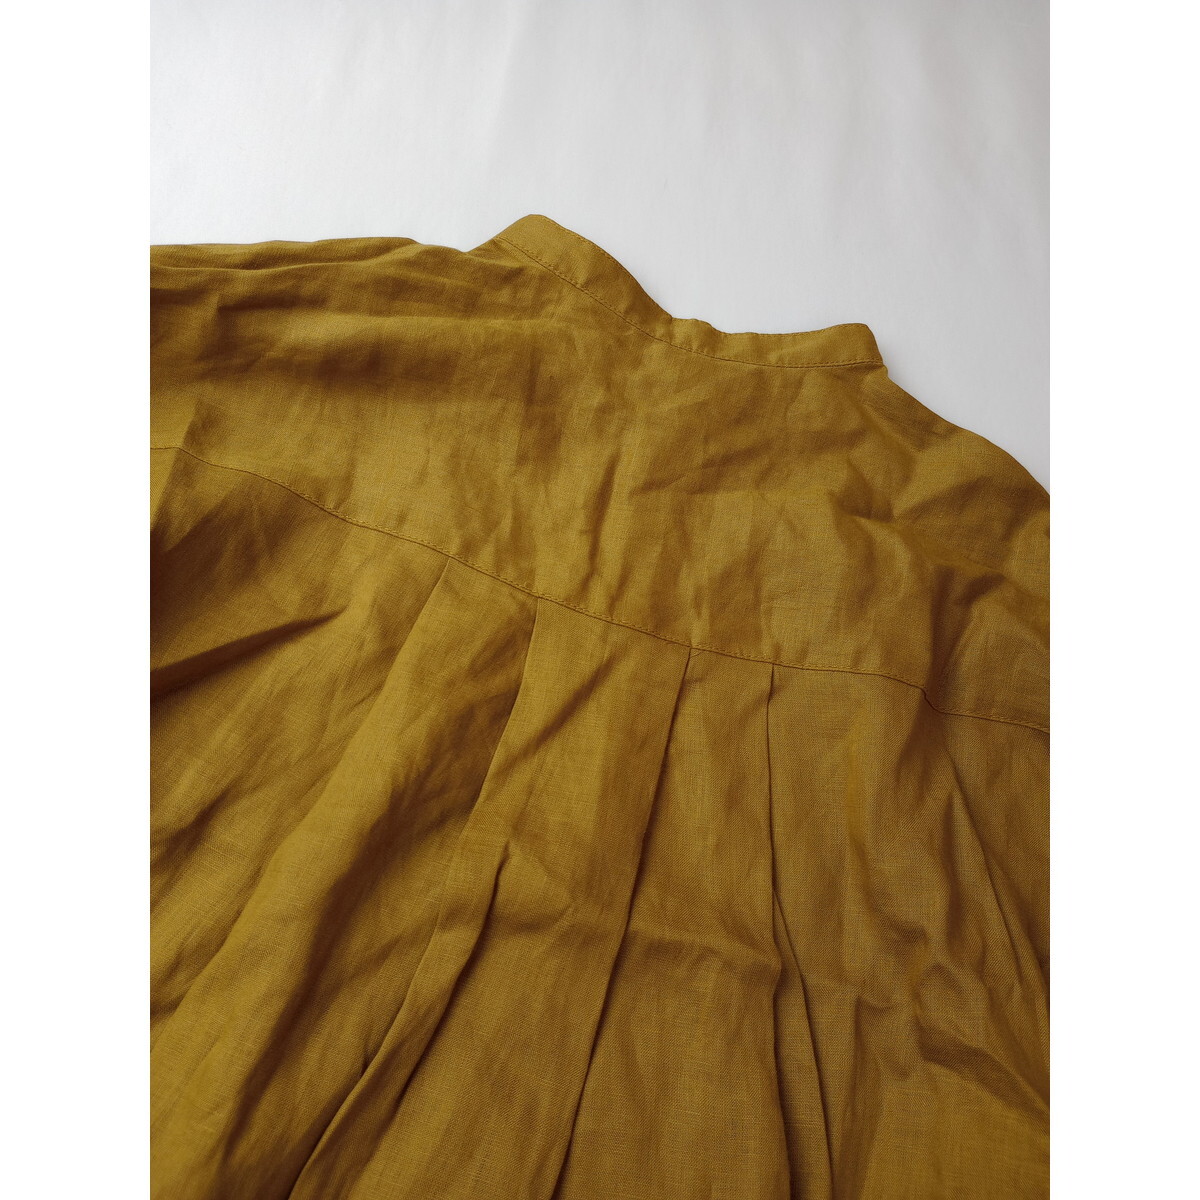 CIAOPANIC TYPY Ciaopanic tipi-[... feeling . burnishing ....]linen flax 100% long sleeve shirt blouse mustard yellow (35S+8341)